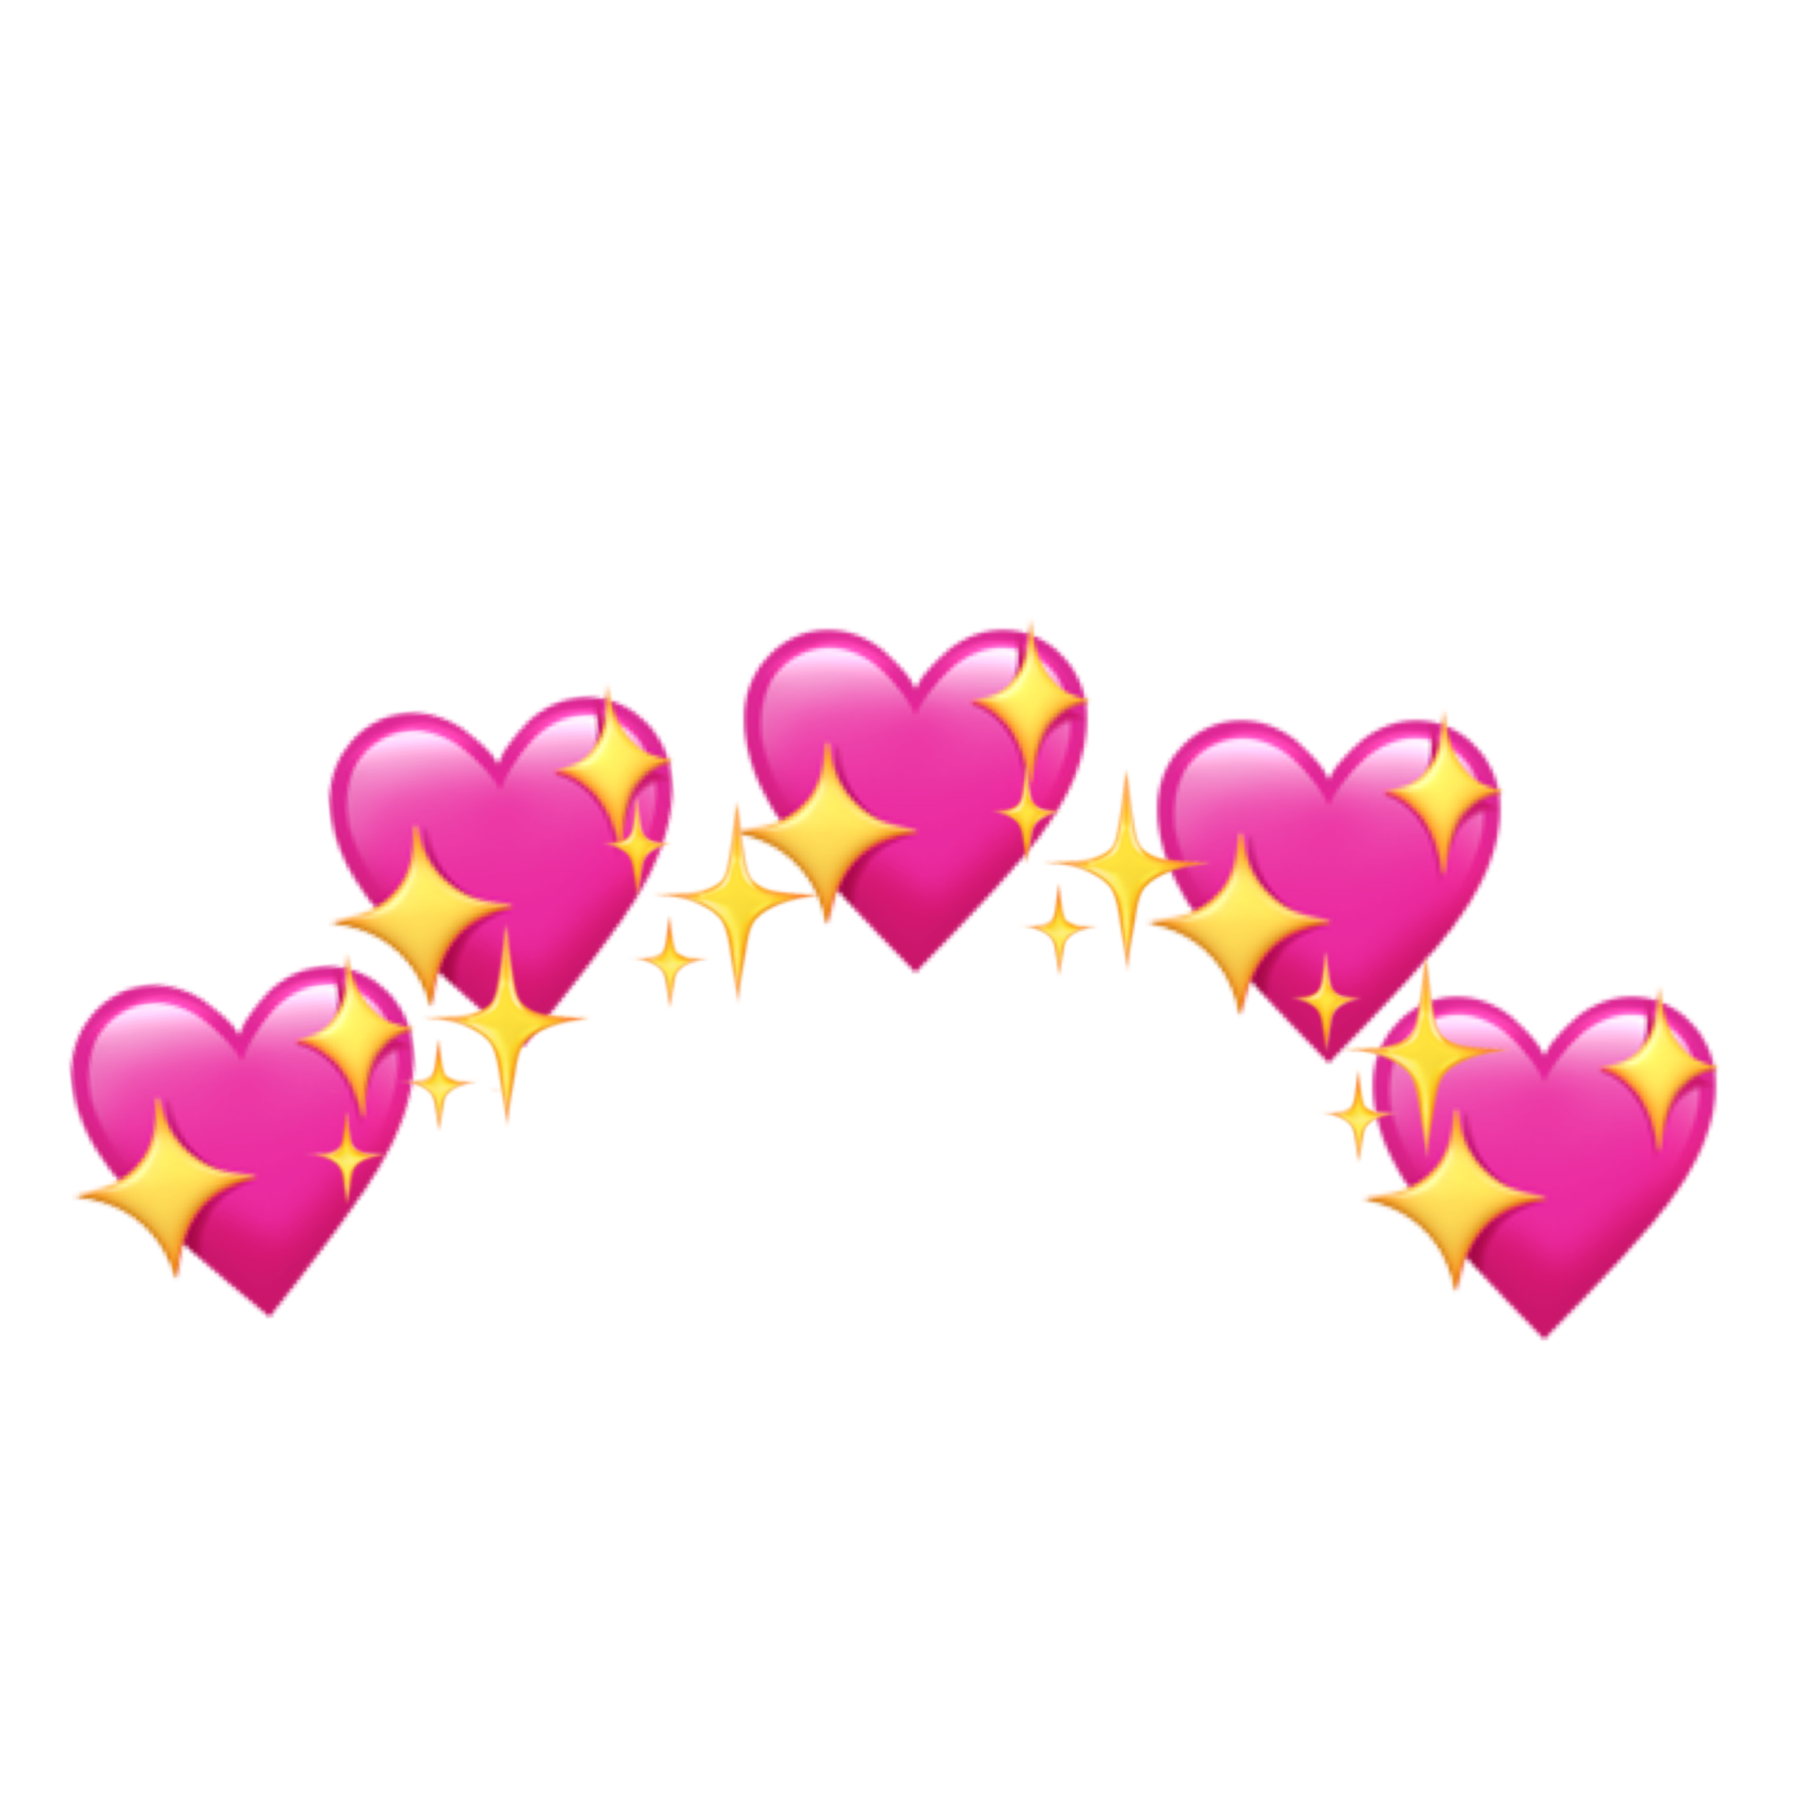 Crown Pictures Queen Pictures Pink Heart Emoji Pixel Heart | The Best ...